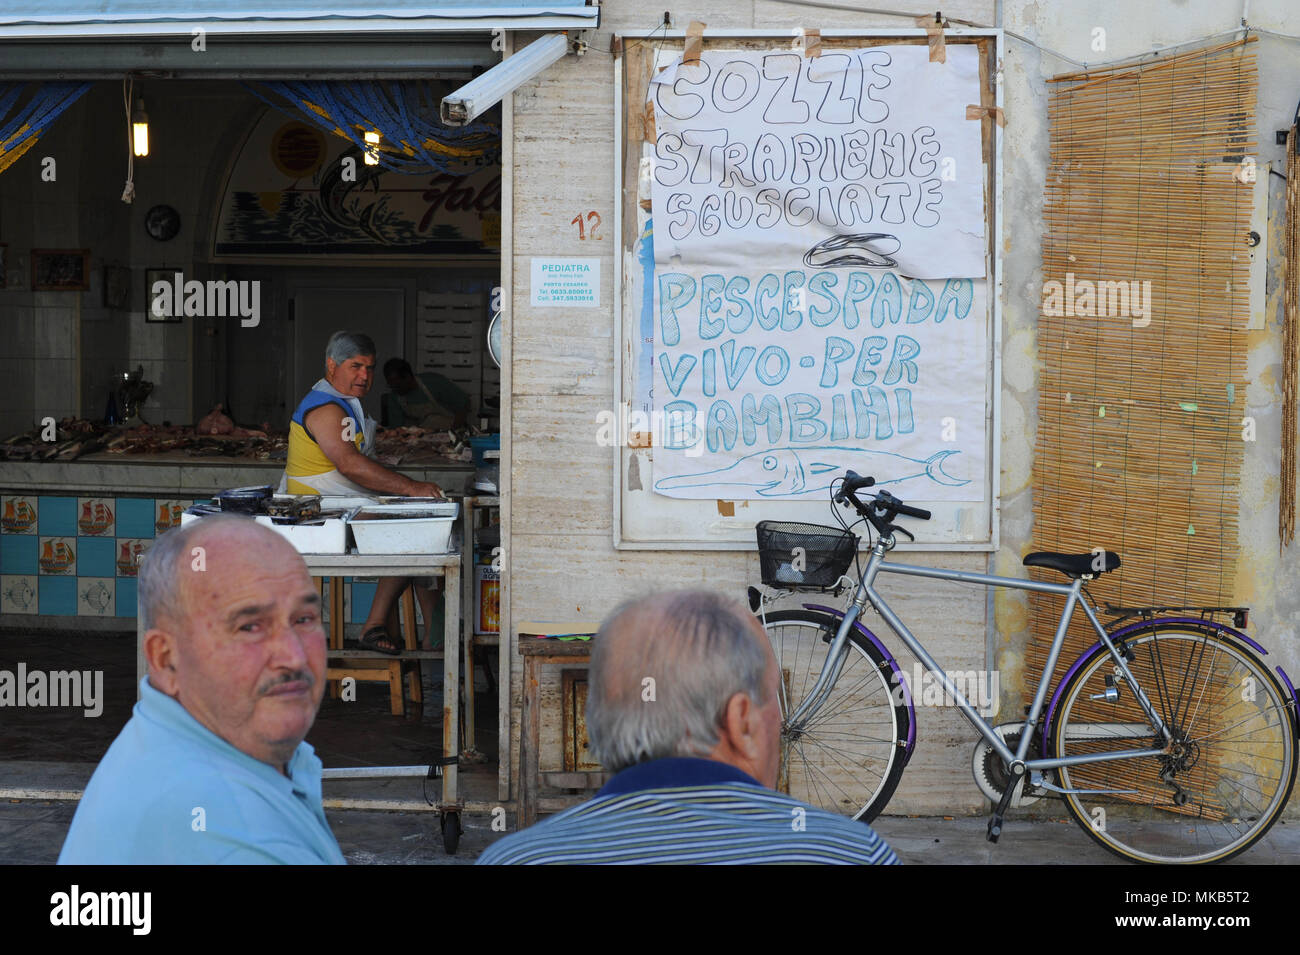 Porto Cesareo, fish shop. Italy. Stock Photo